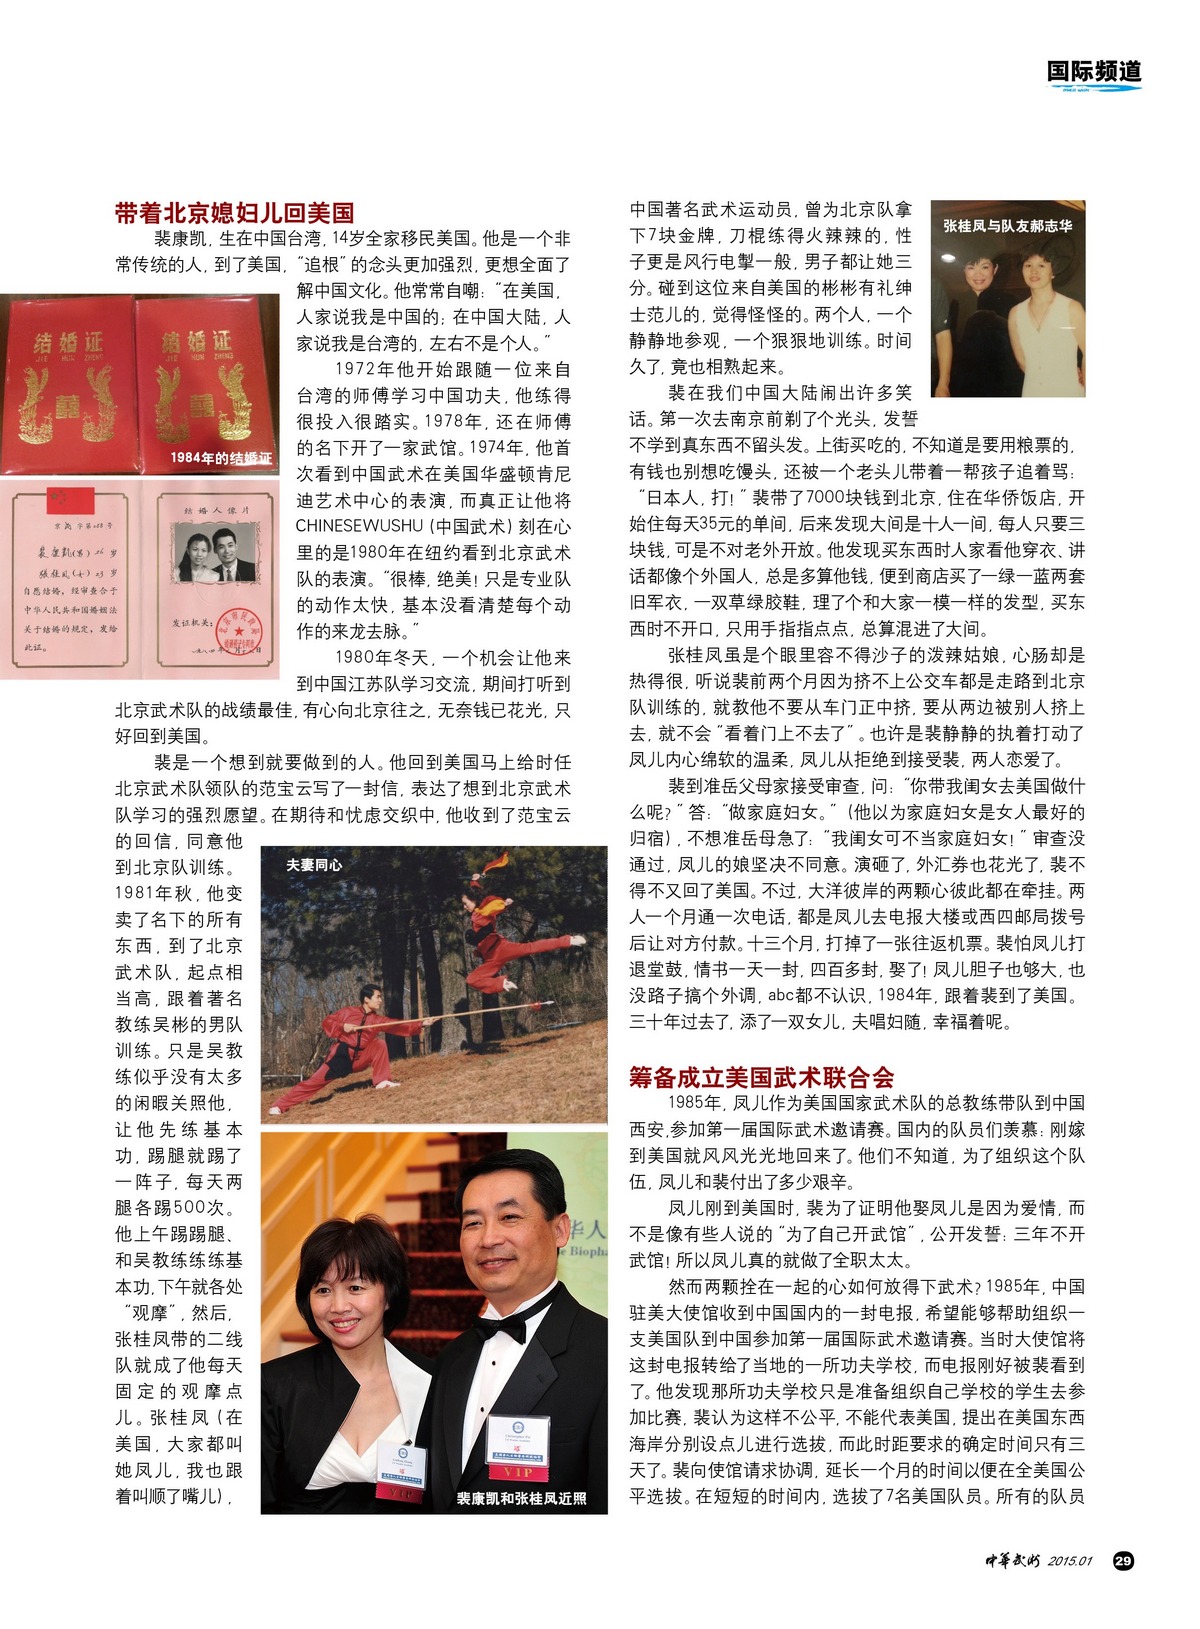 Pei Wushu Magazine 3